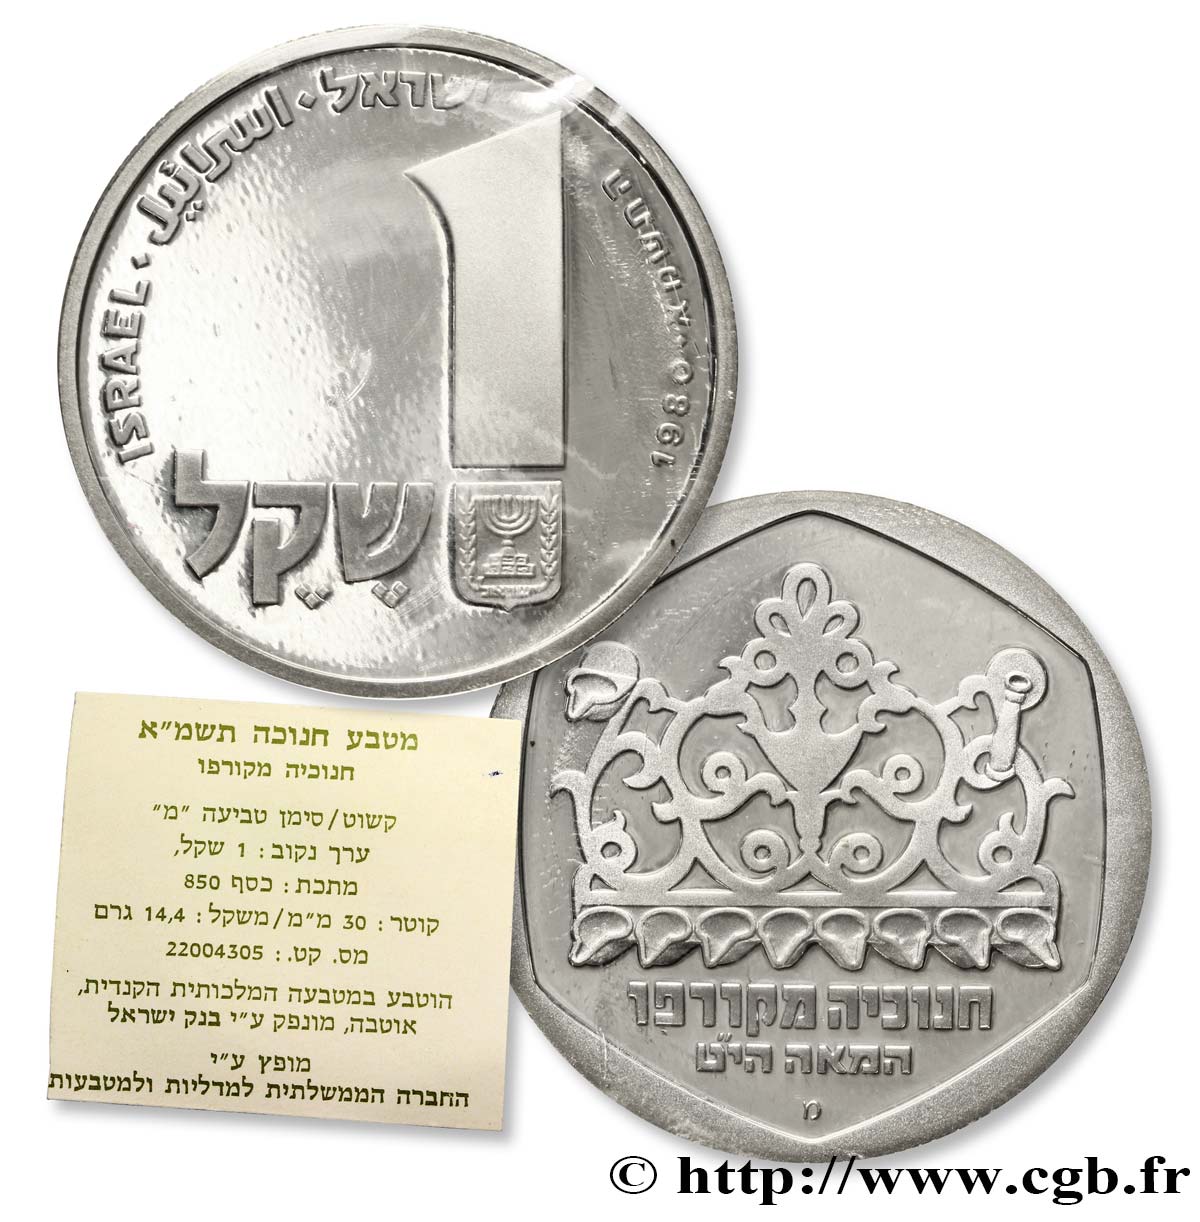 ISRAELE 1 Sheqel Hanukka - Lampe de Corfou an 5743 variété lettre “mem 1980 Royal Canadian Mint FDC 